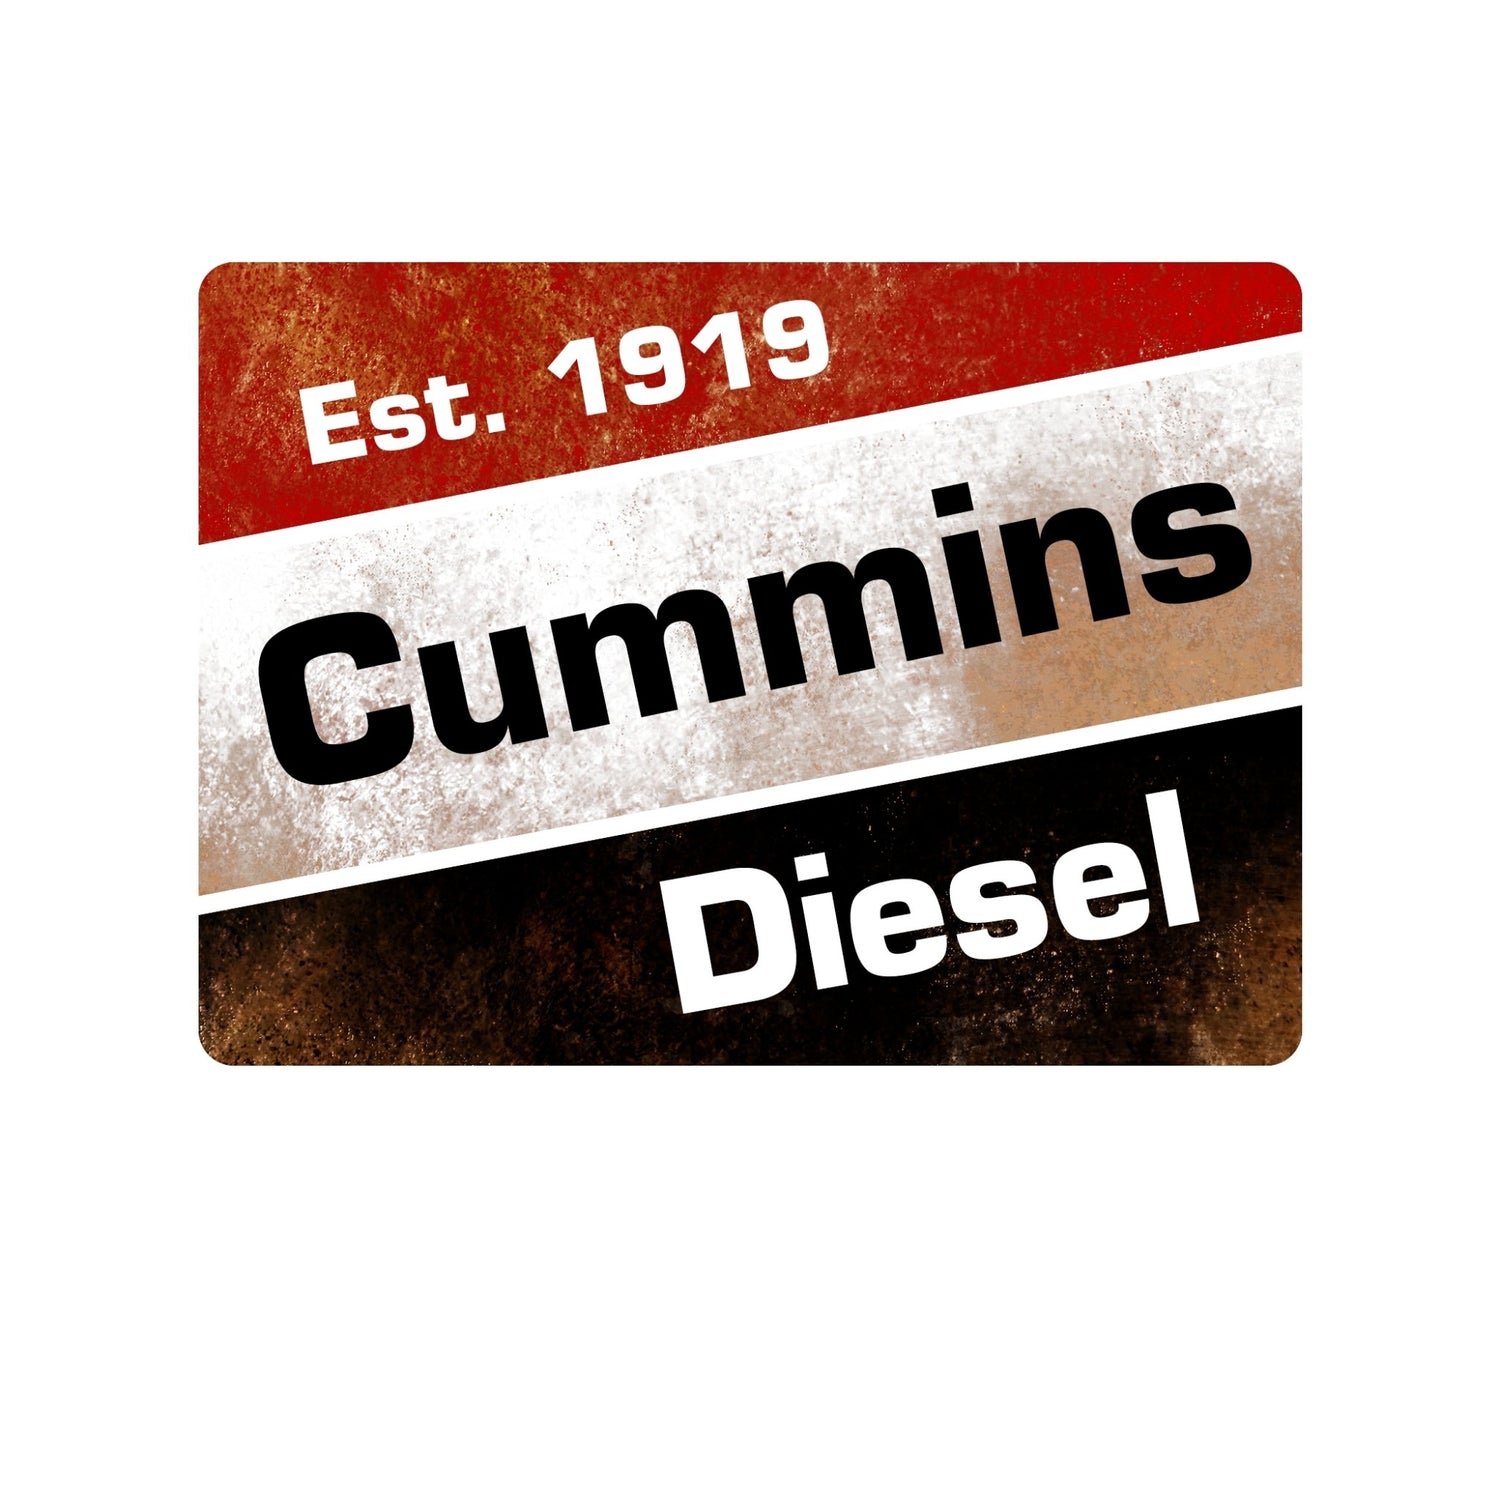 Cummins Diesel